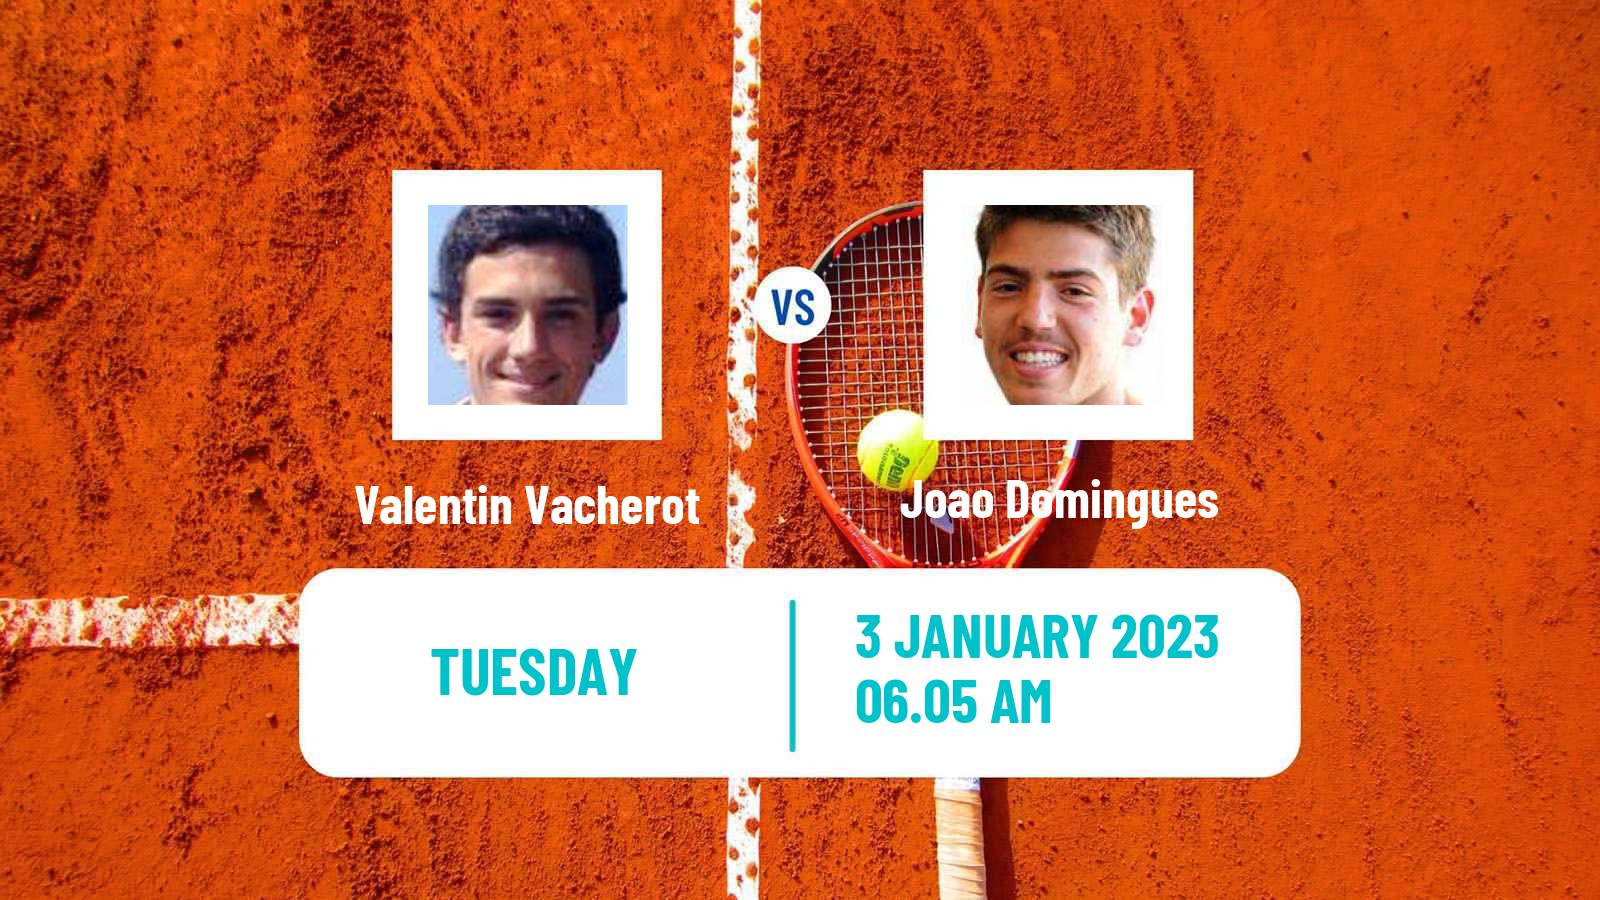 Tennis ATP Challenger Valentin Vacherot - Joao Domingues